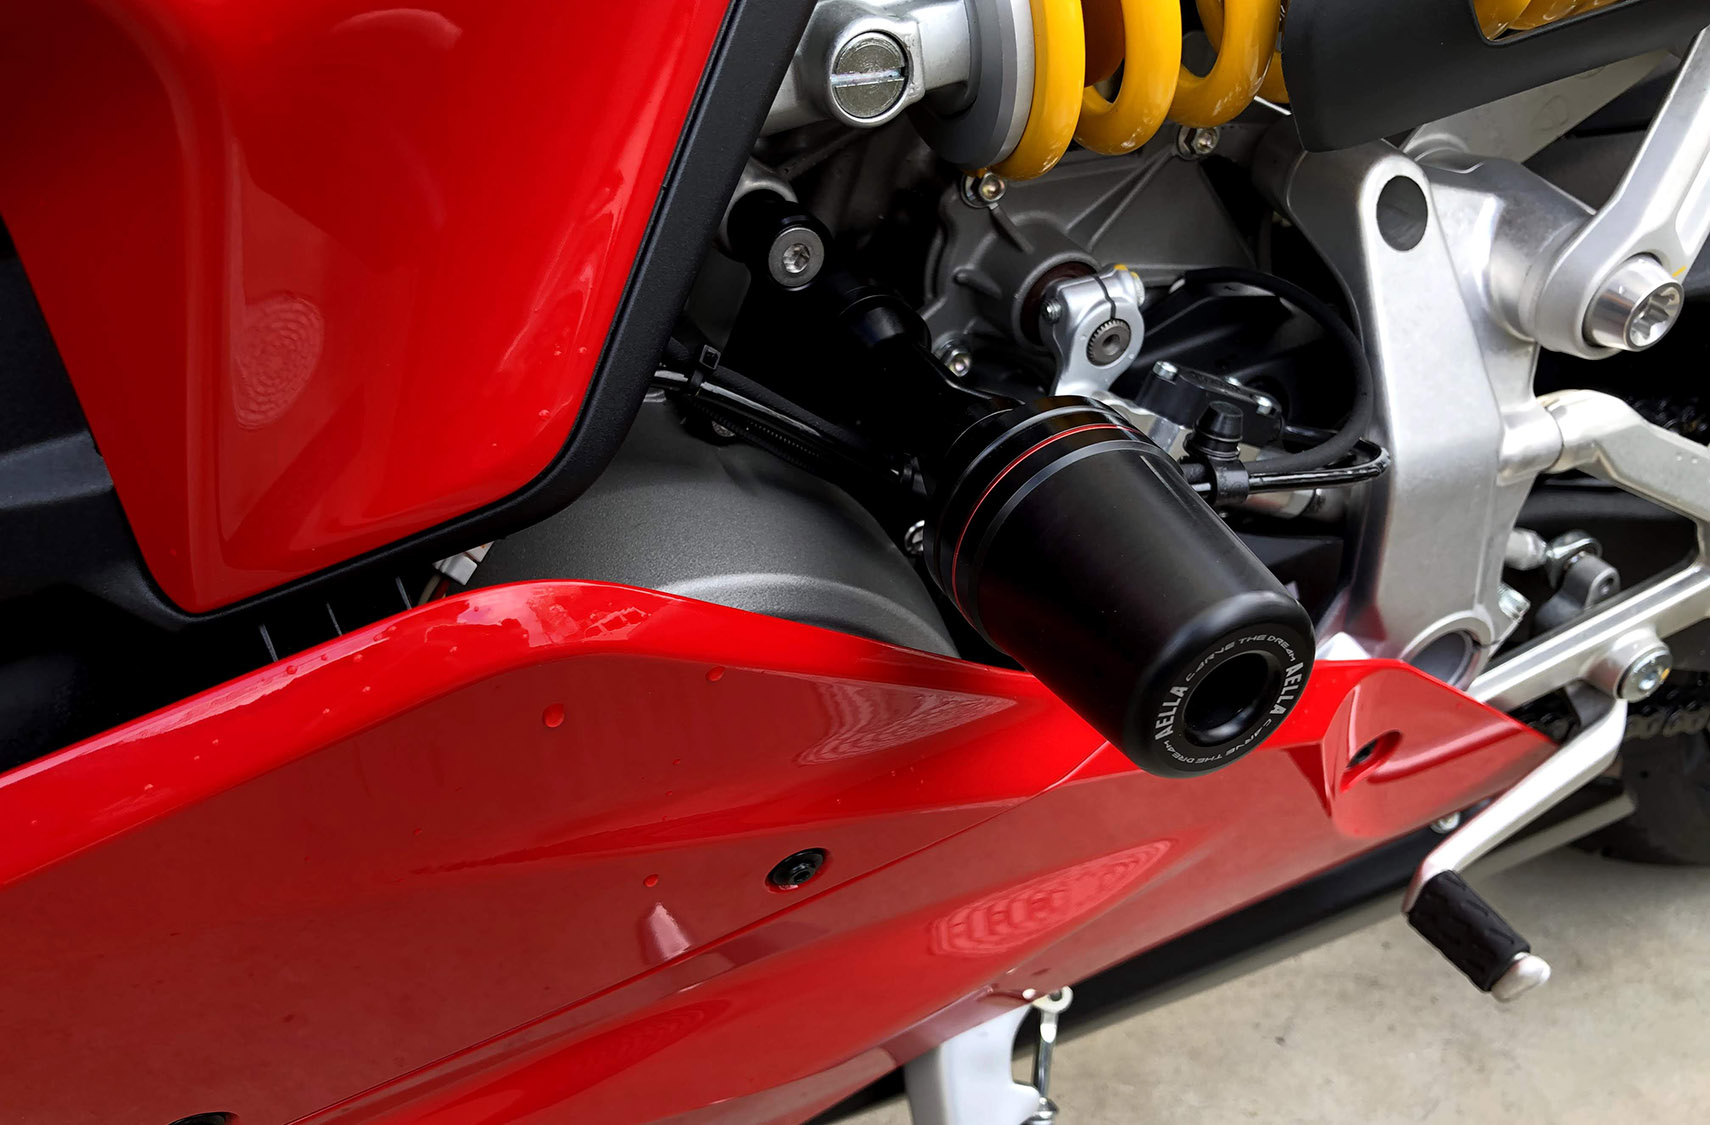 AELLA Frame Slider Kit For the Ducati Panigale V2 (2020+)